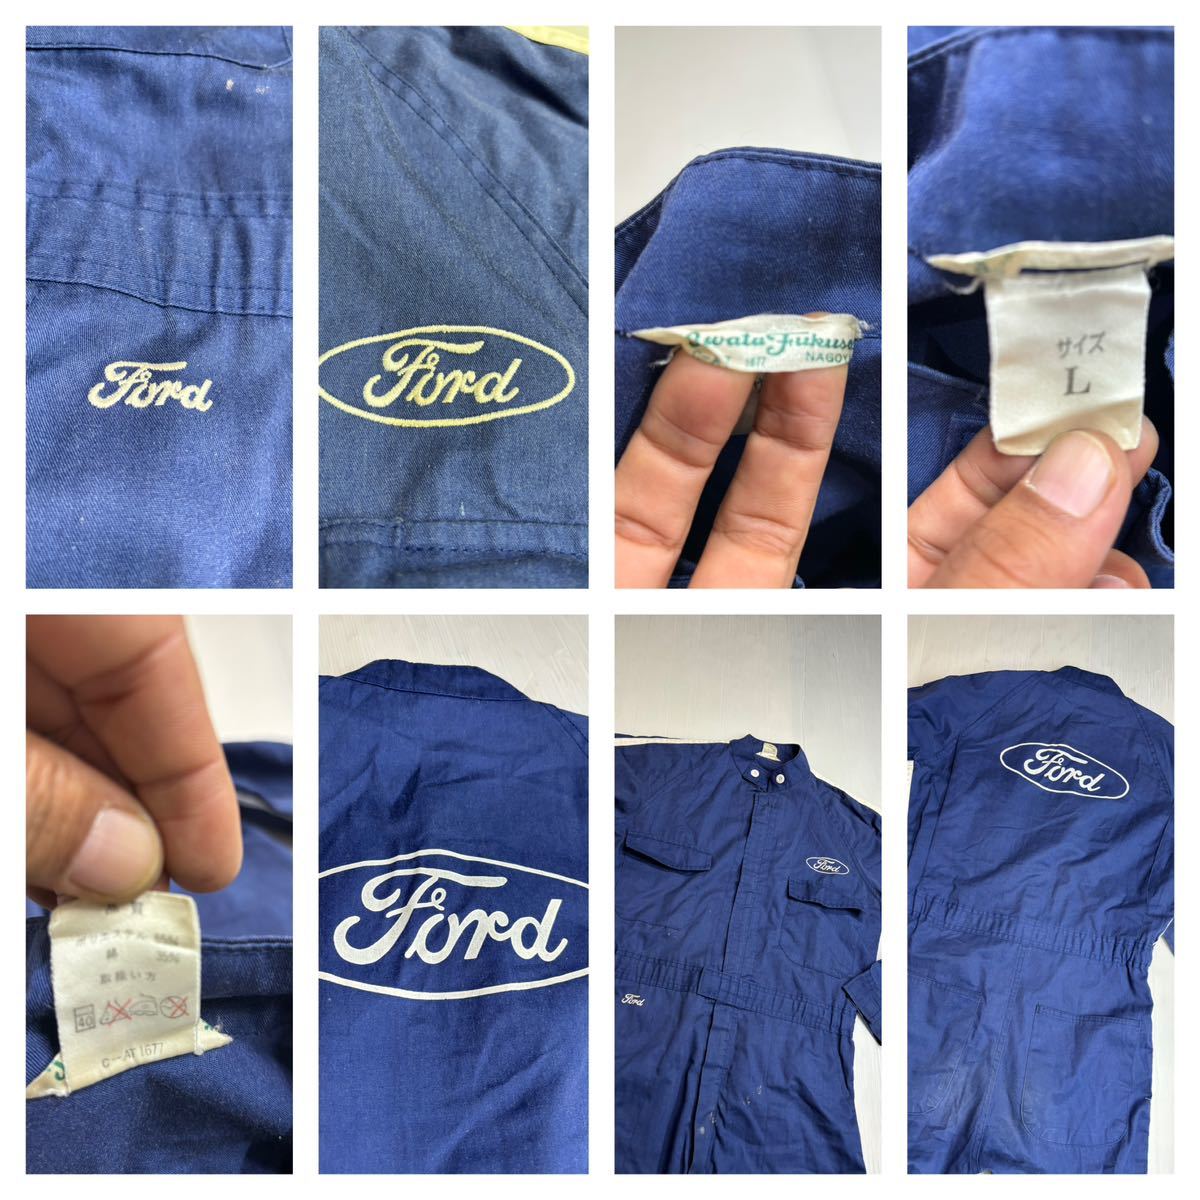  Vintage Ford Ford te Caro go большой боковой линия поли хлопок комбинезон комбинезон все в одном темно-синий L механик сервис man 